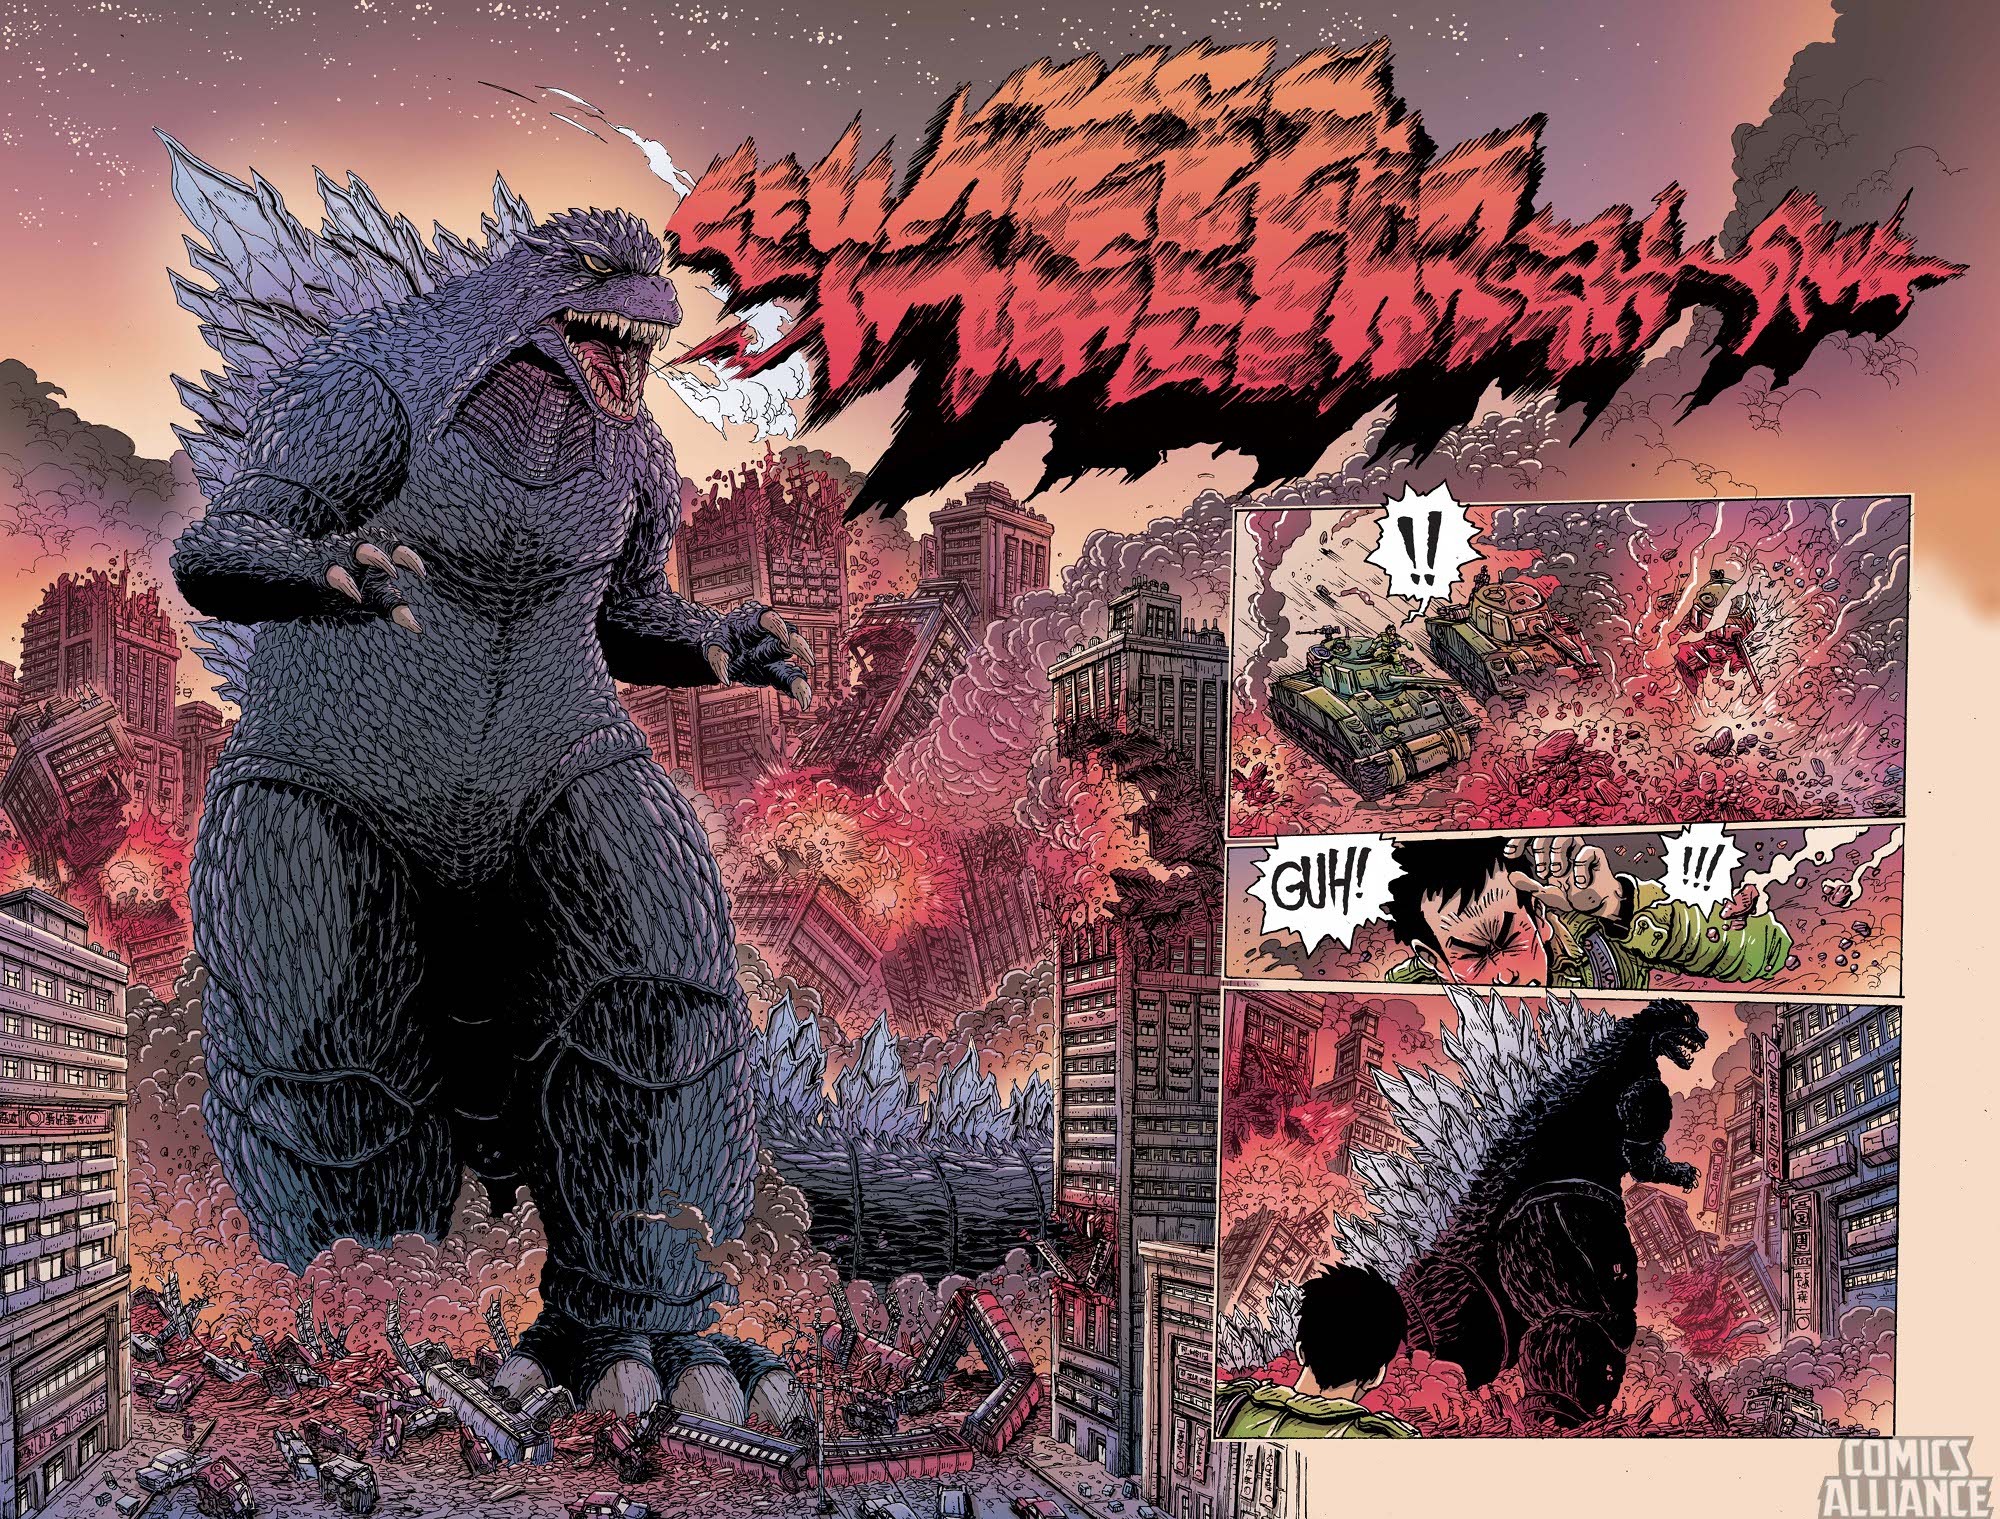 Godzilla